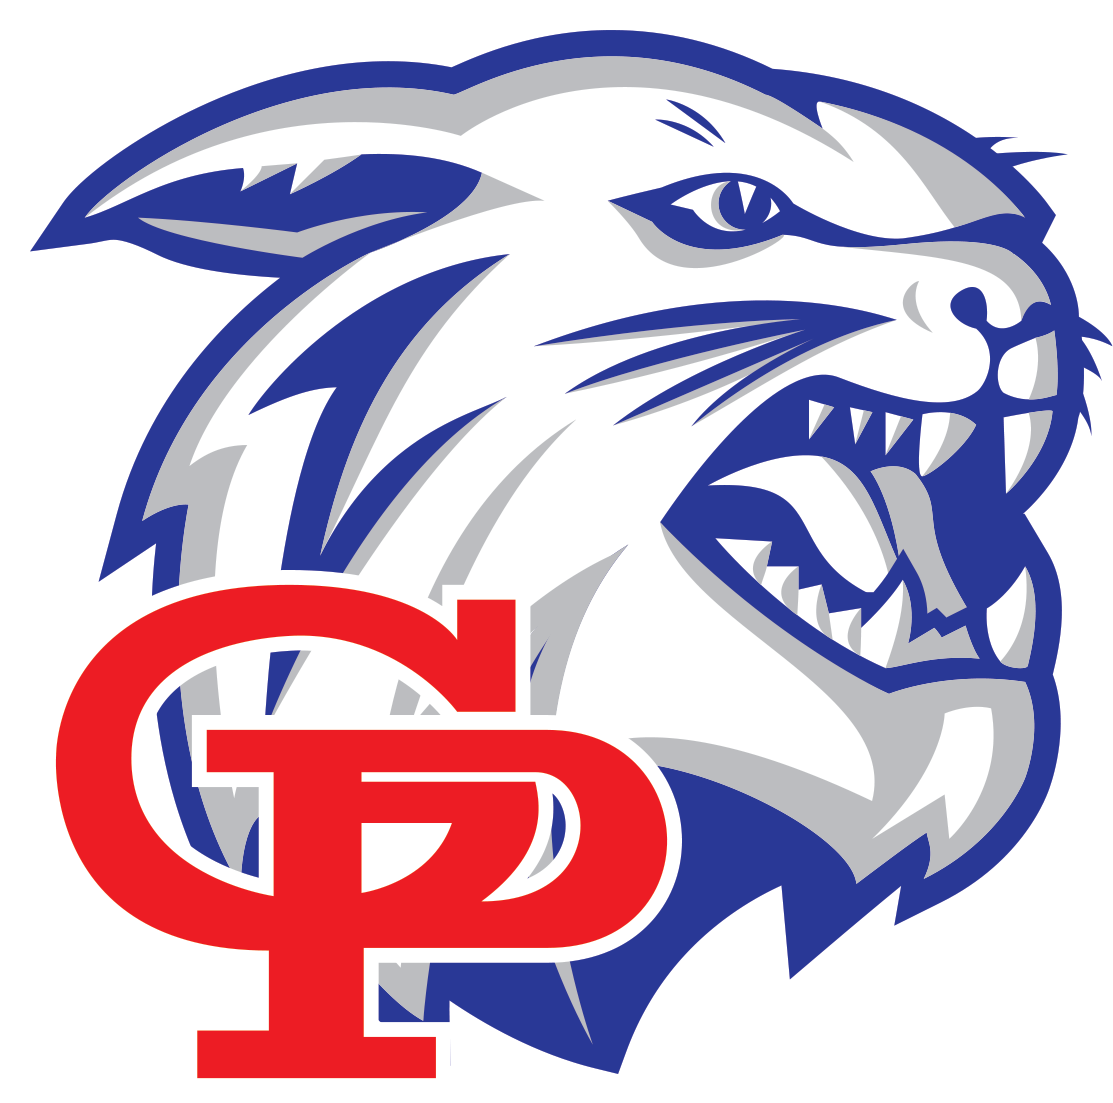 Logo - Gregory Portland High School (1200x1200)